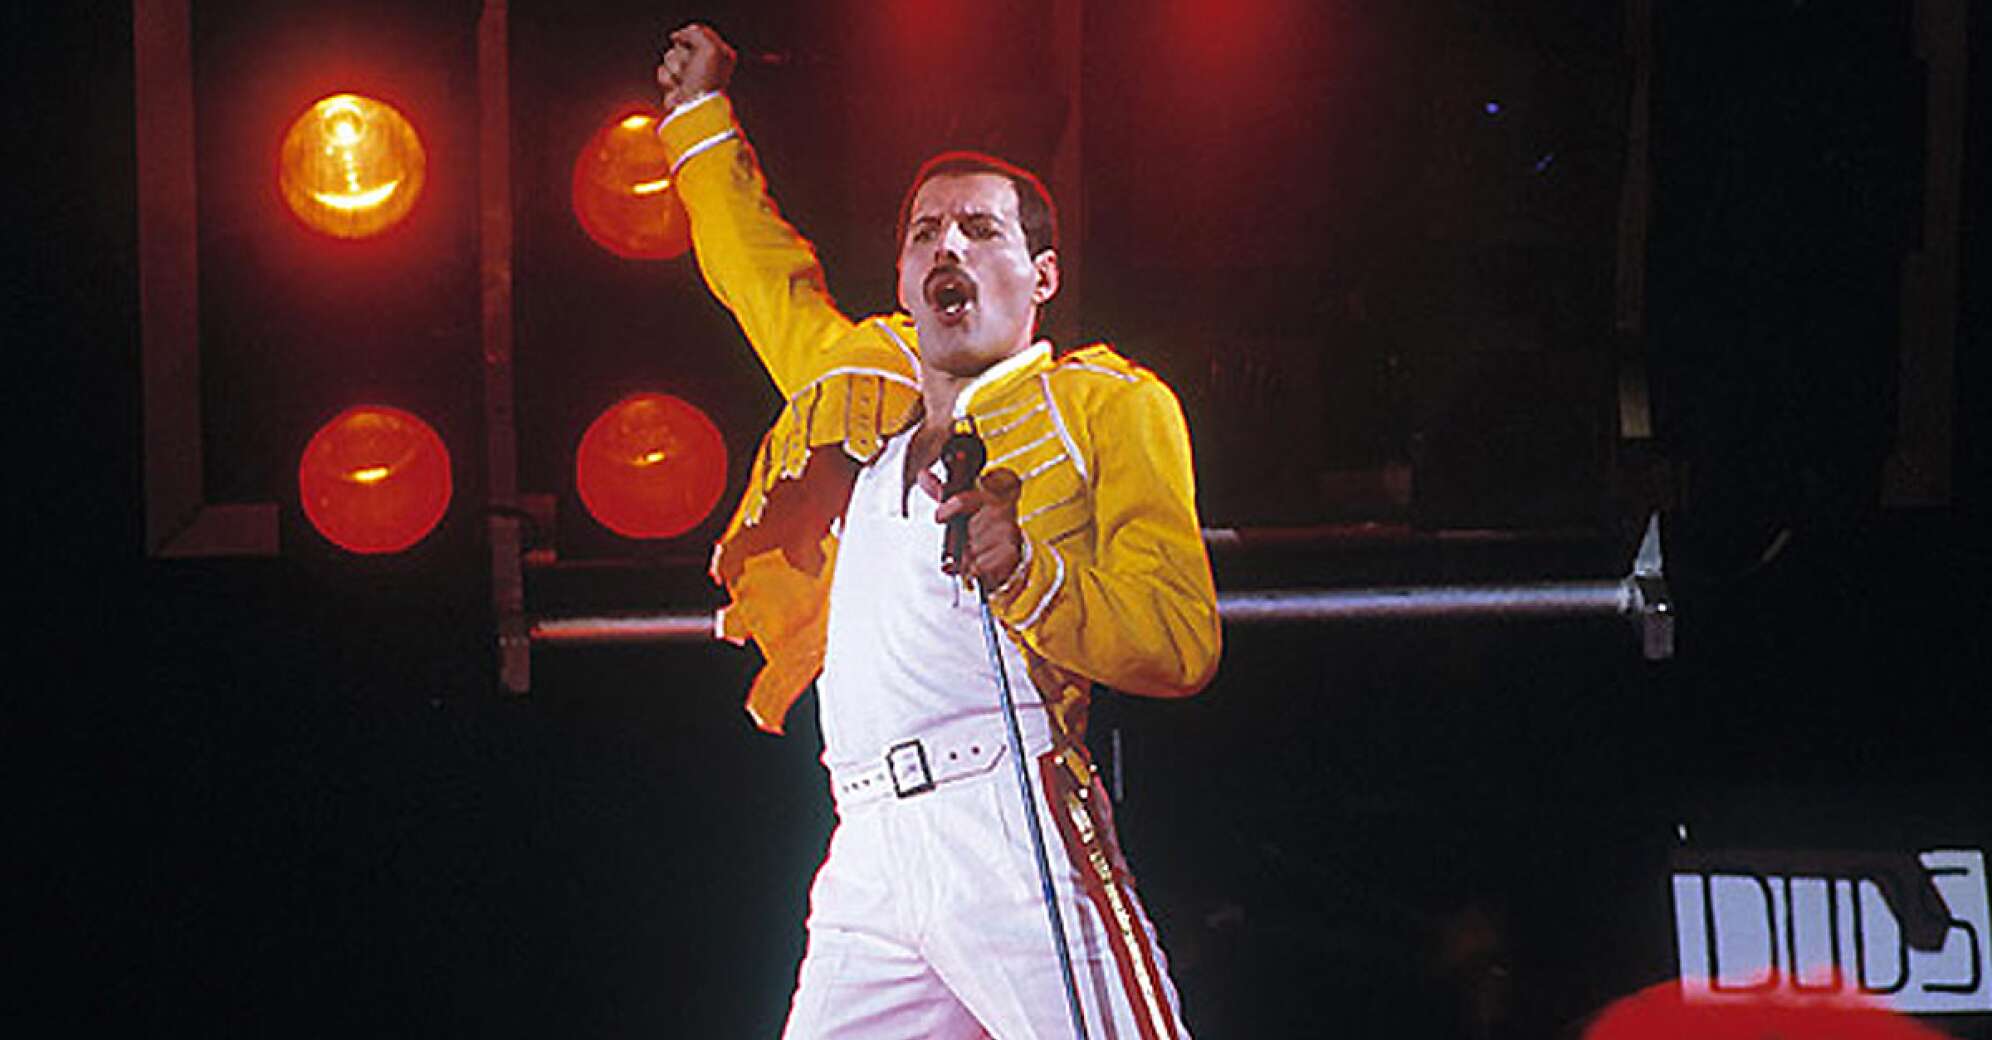 Freddie Mercury am schreien